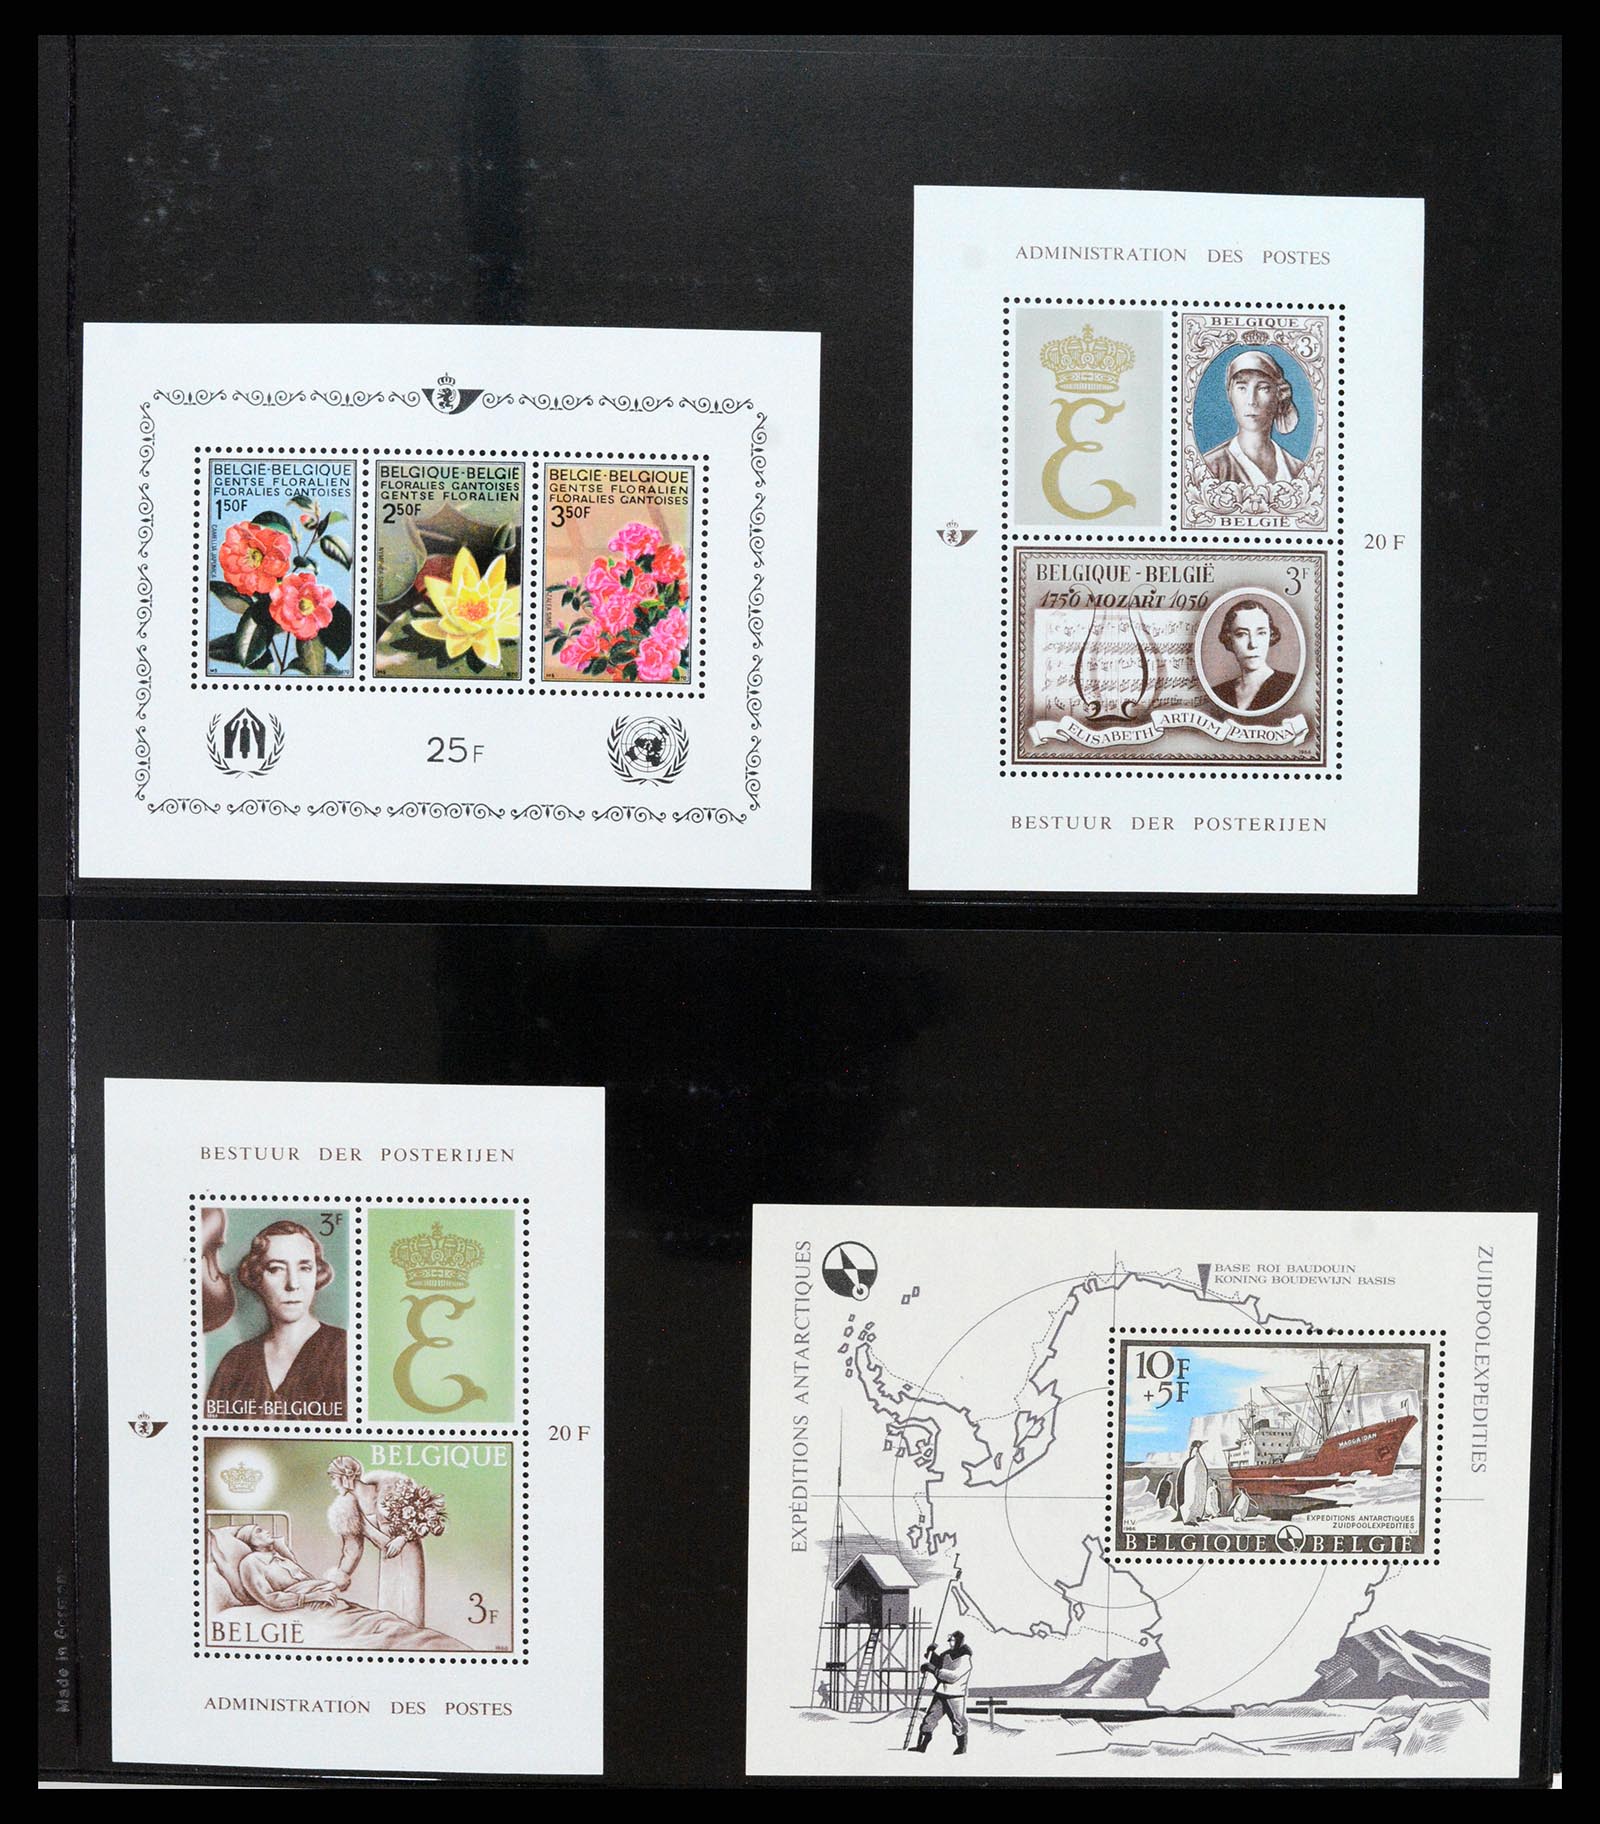 37345 004 - Stamp collection 37345 European countries souvenir sheets.